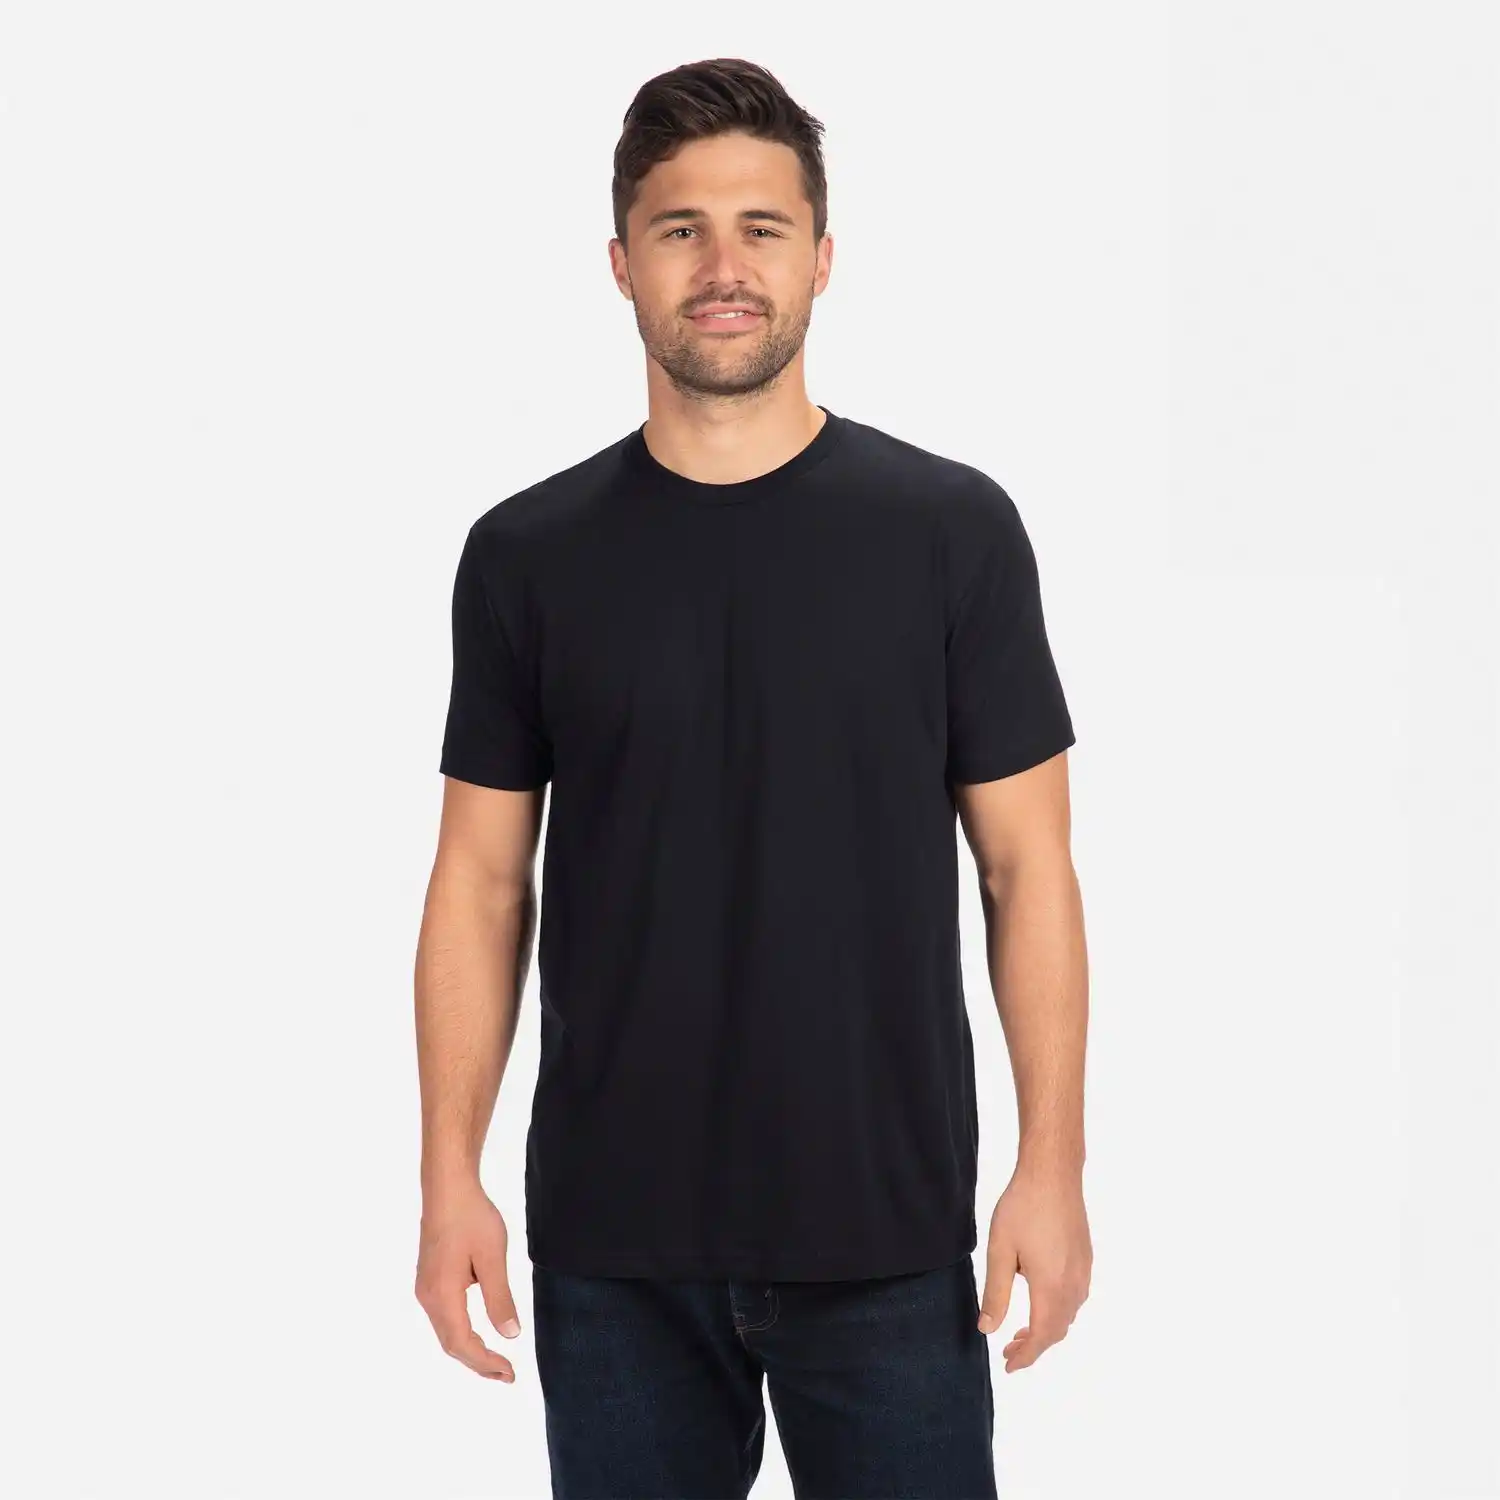 Next Level 6210 Unisex CVC t-shirt macio respirável 60% algodão penteado anel-girado da CVC, 40% poliéster gola camiseta clássica